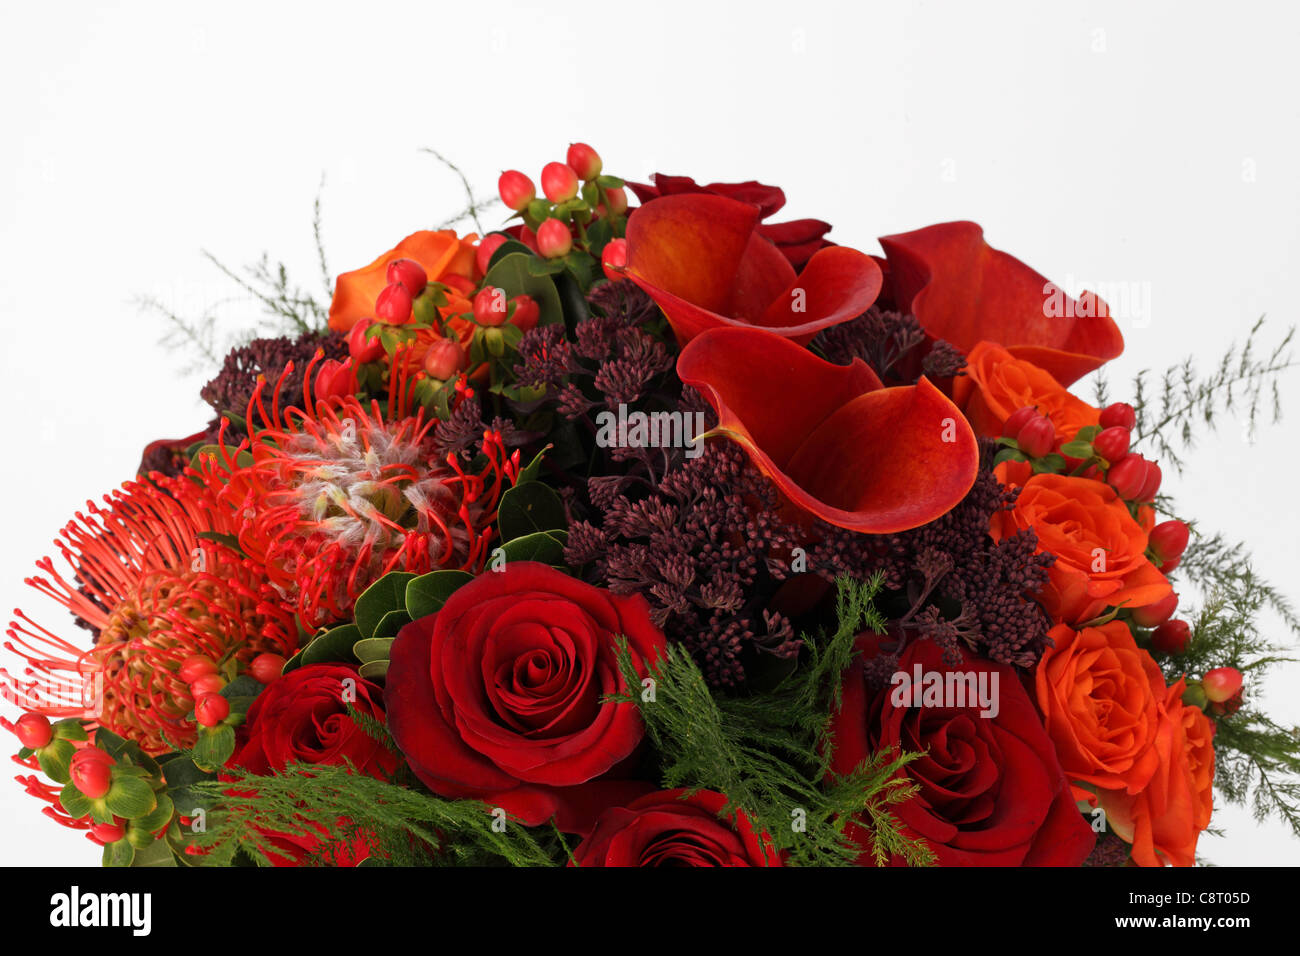 Eine Nahaufnahme von einem bunten Blumenstrauß. & Orange rote Rosen, rote Callas, rote Proteas, unbekannte lila sprays Stockfoto